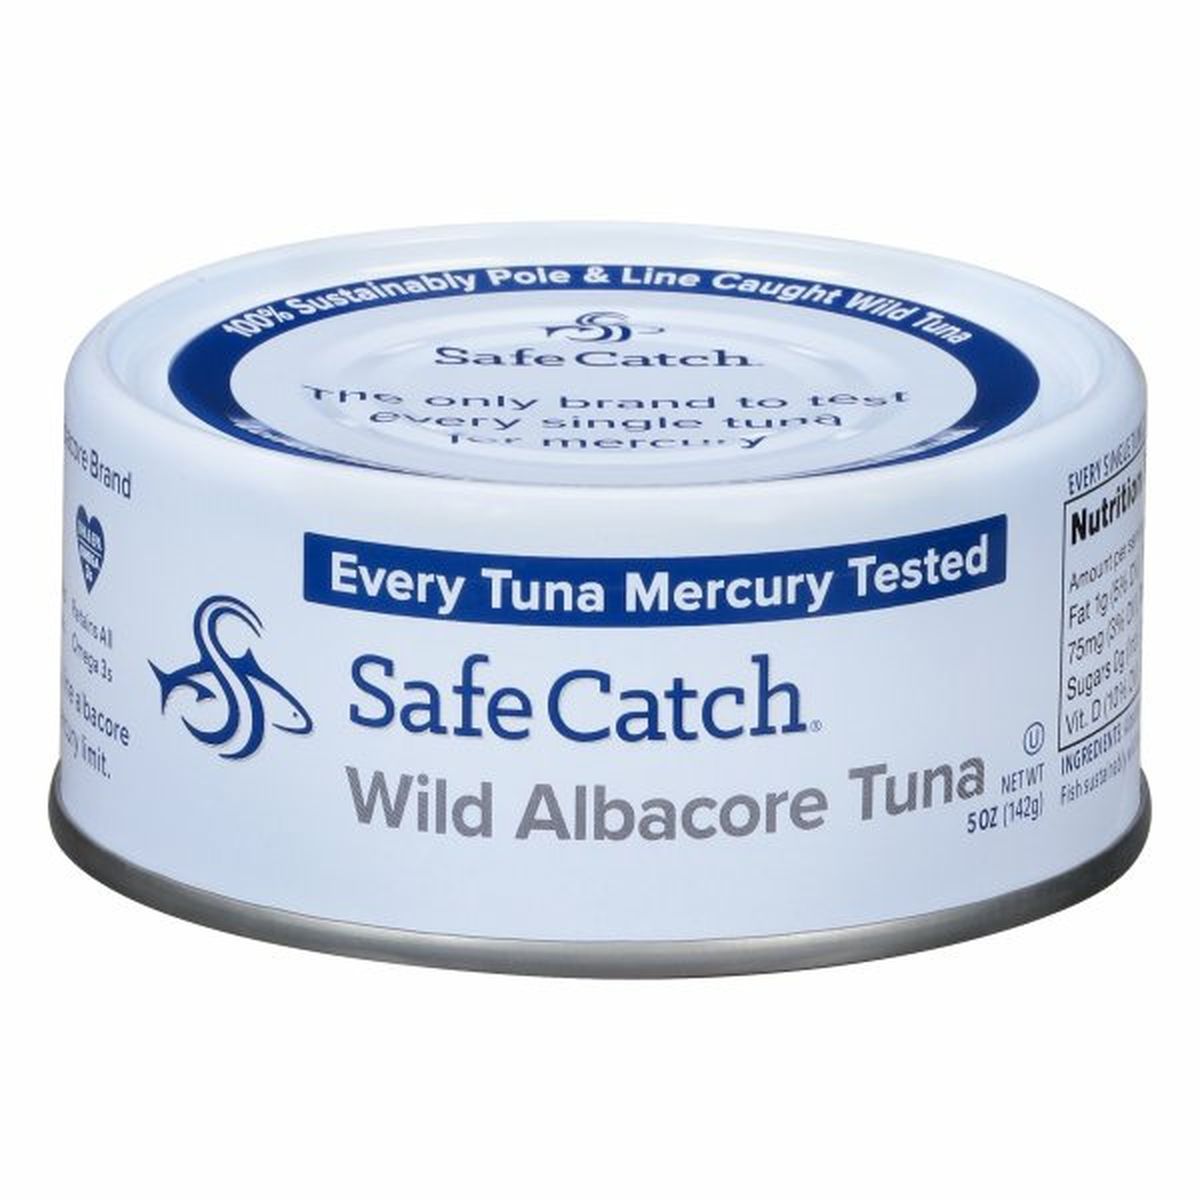 Calories in Safe Catch Tuna, Albacore, Wild